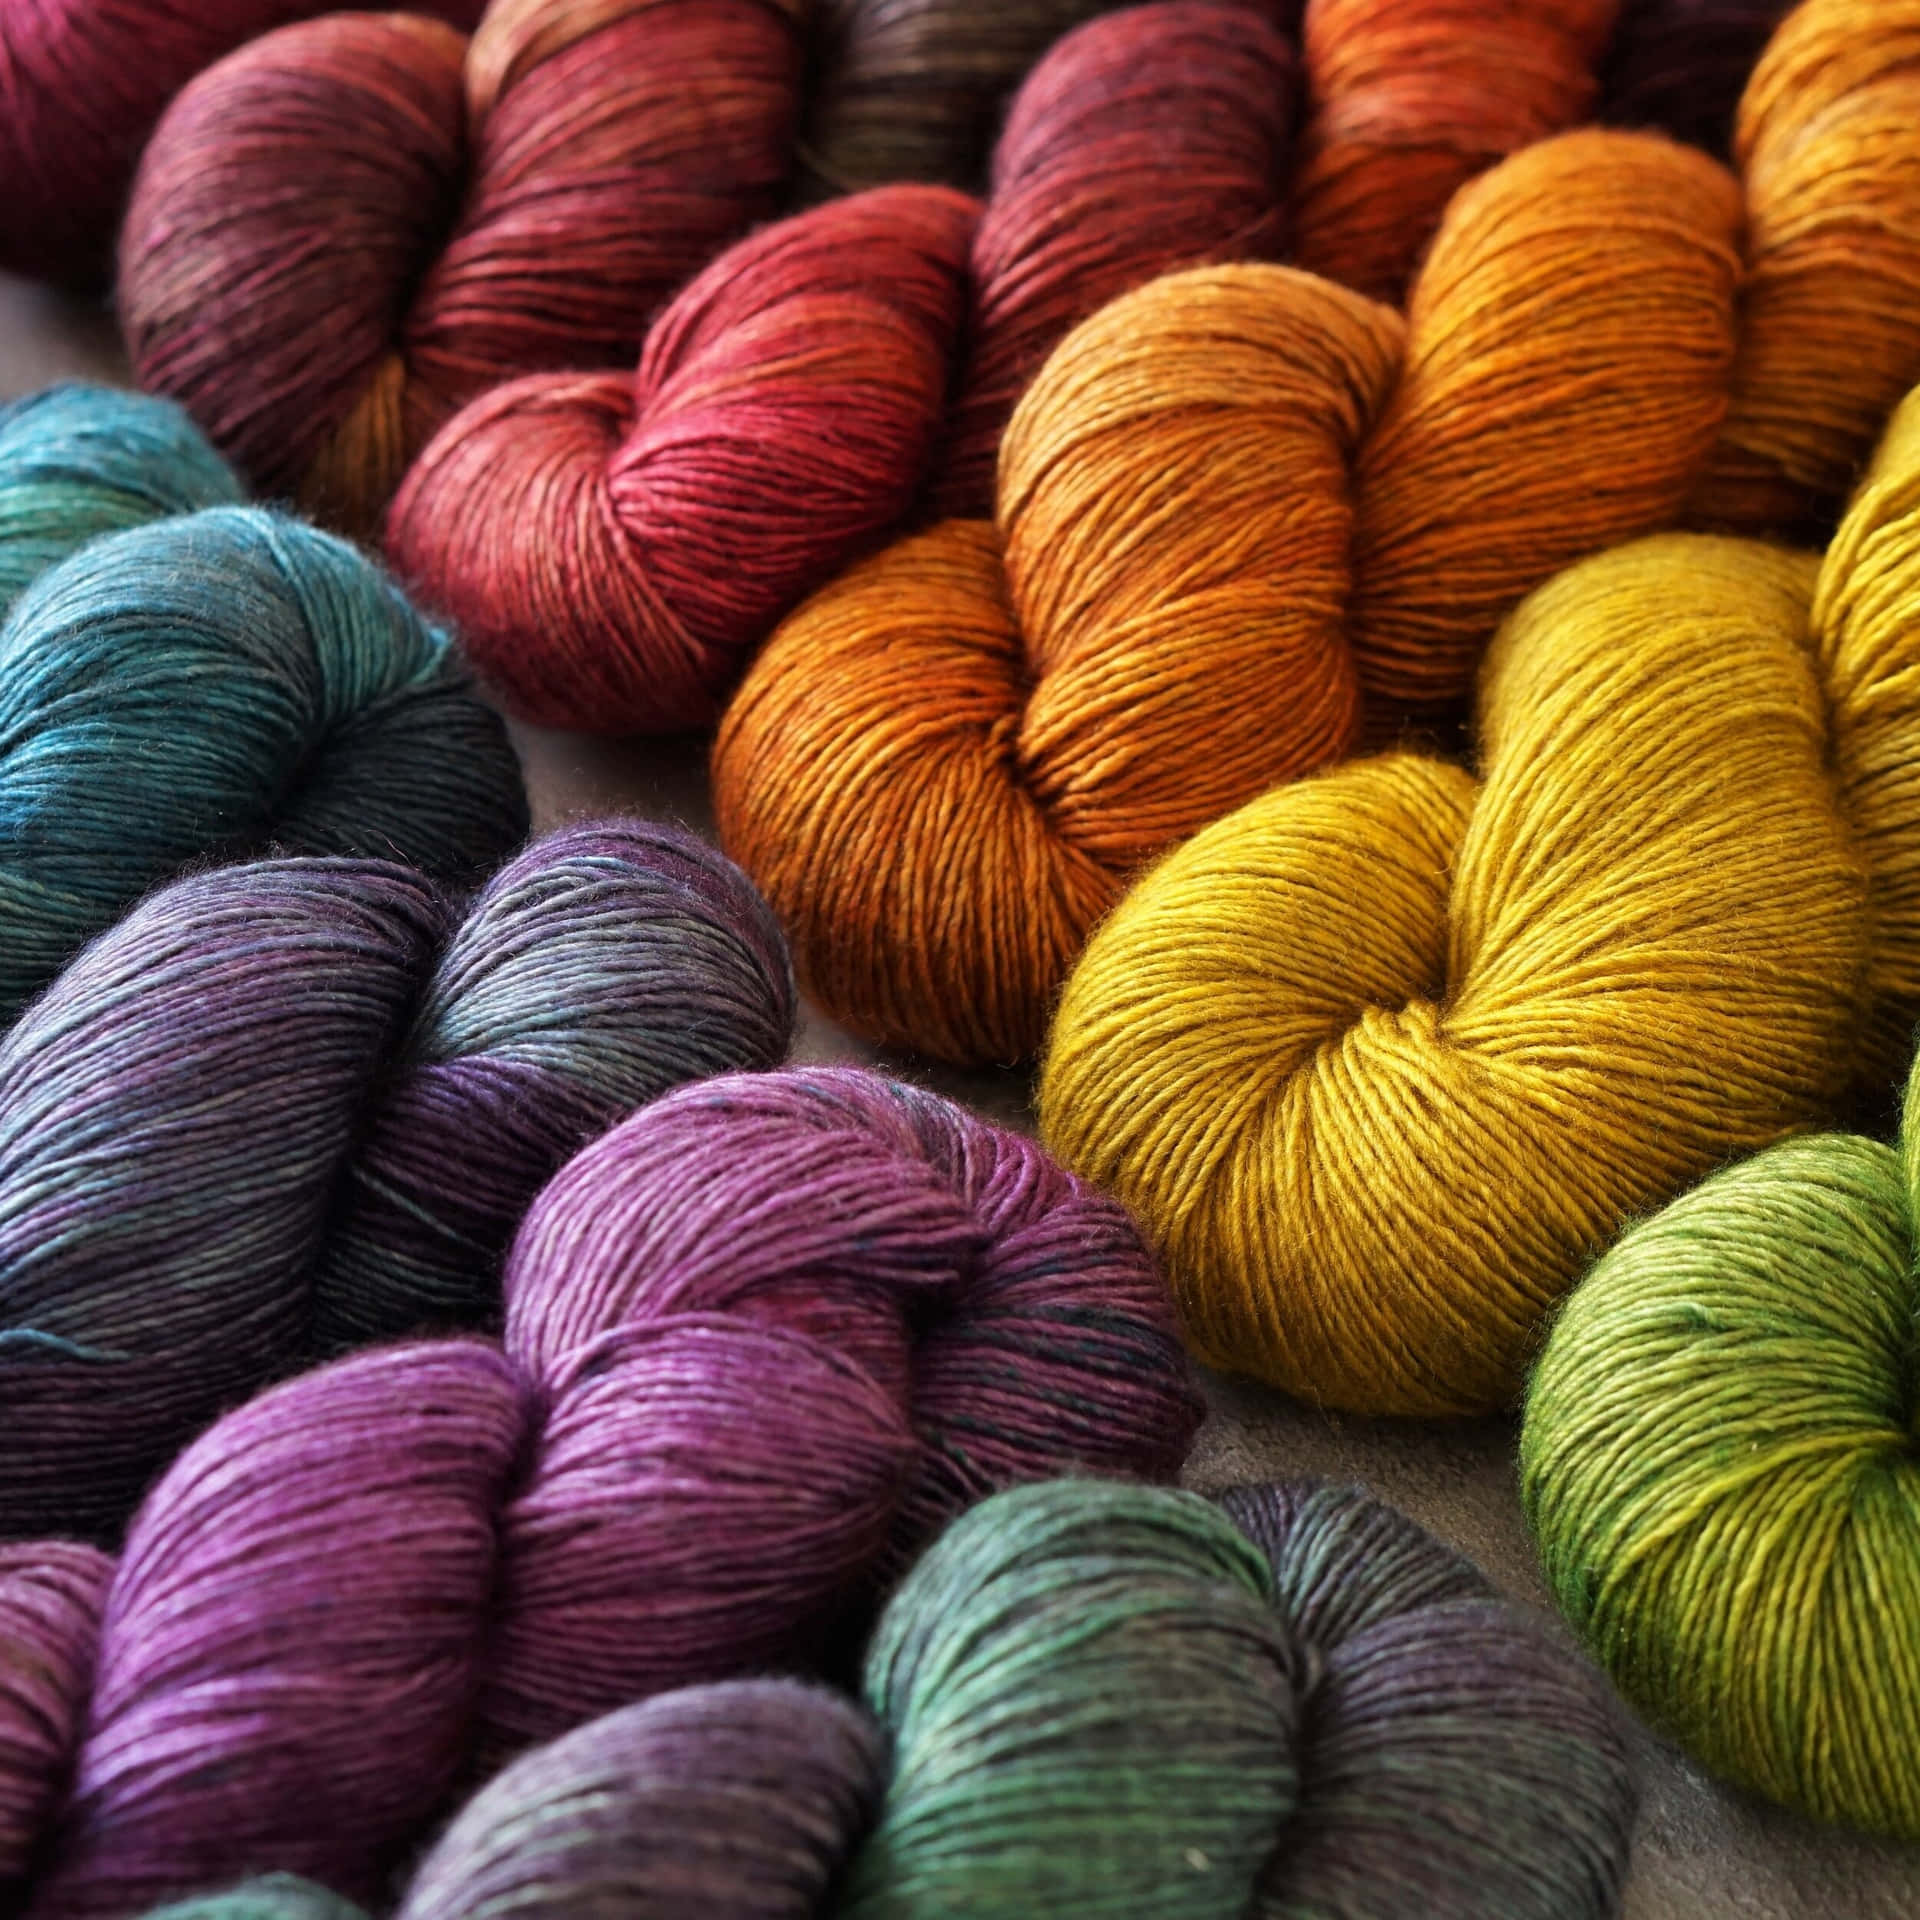 Multicolor Knitting Yarns Wallpaper